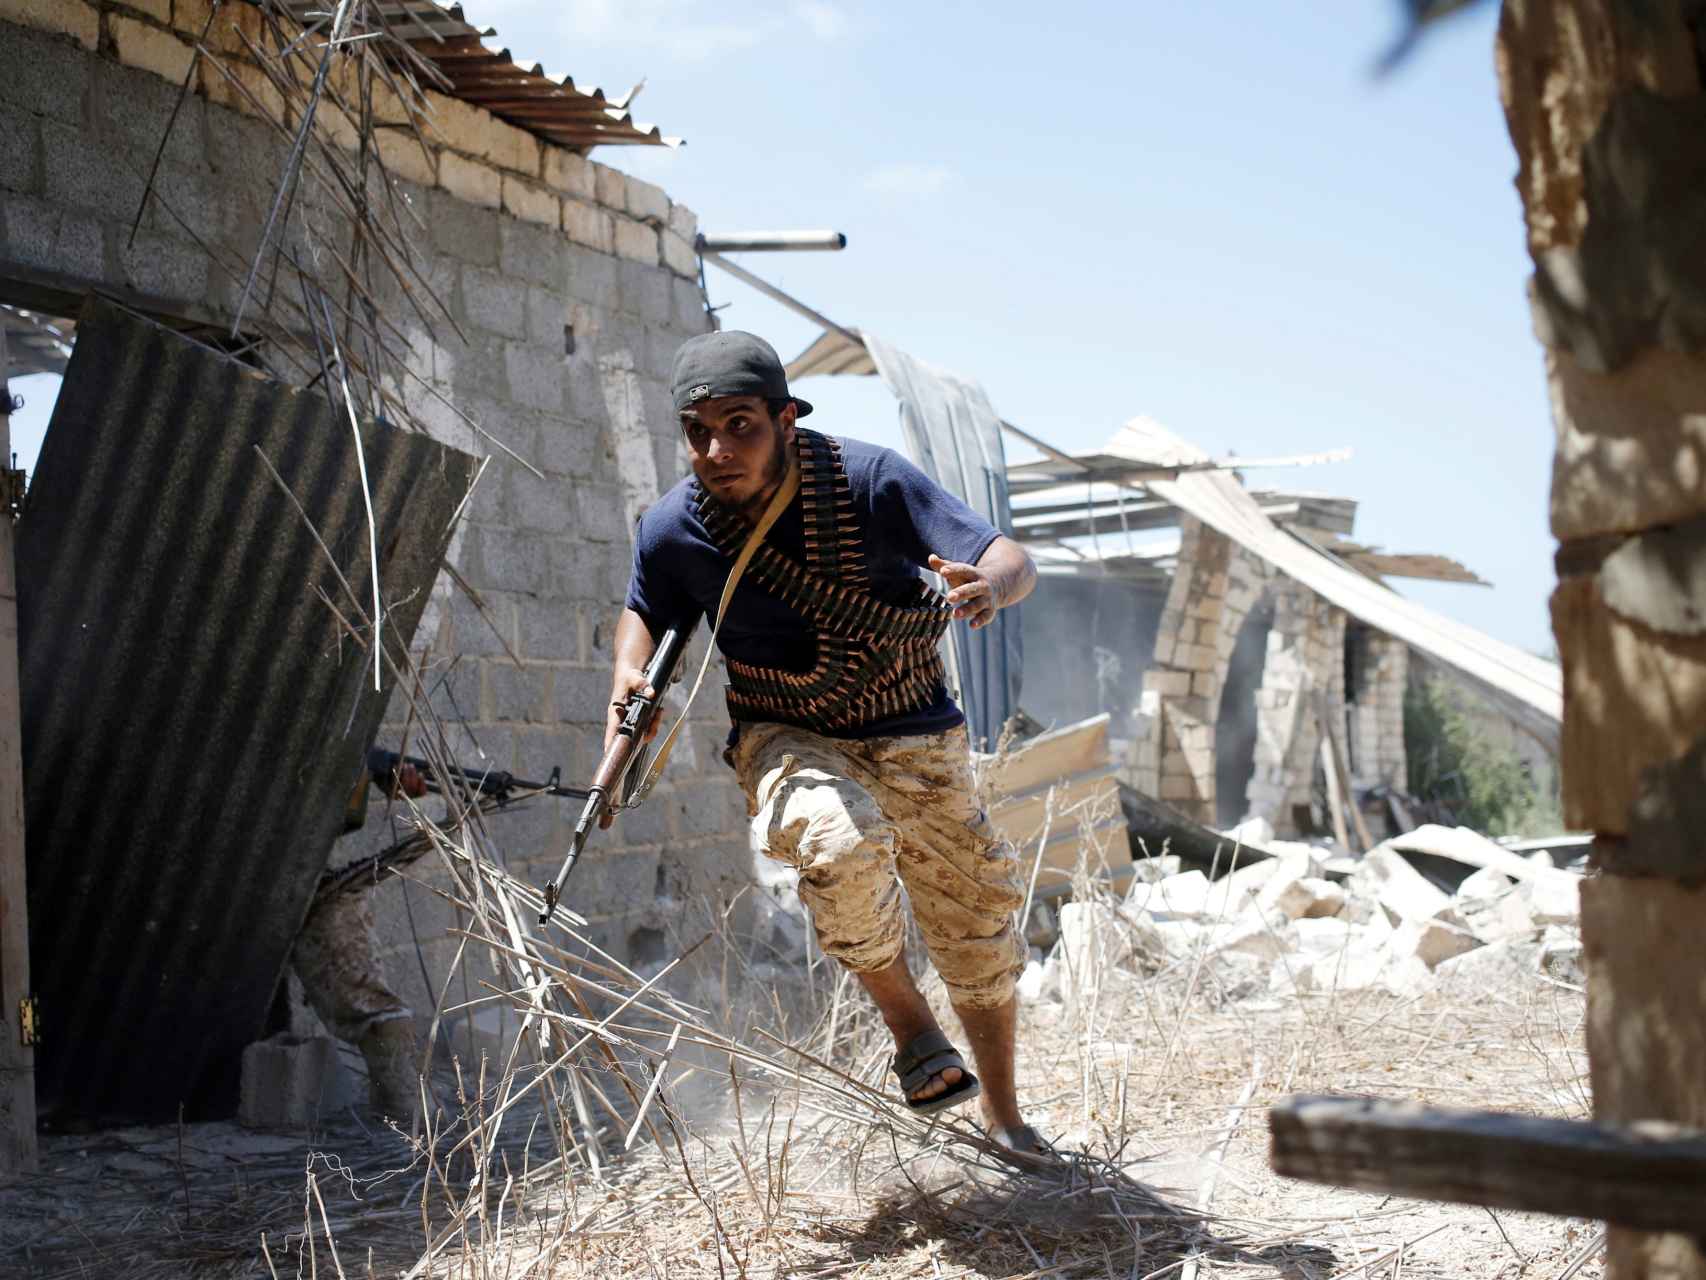 Un soldado libio intenta cubrirse en la batalla por Sirte.